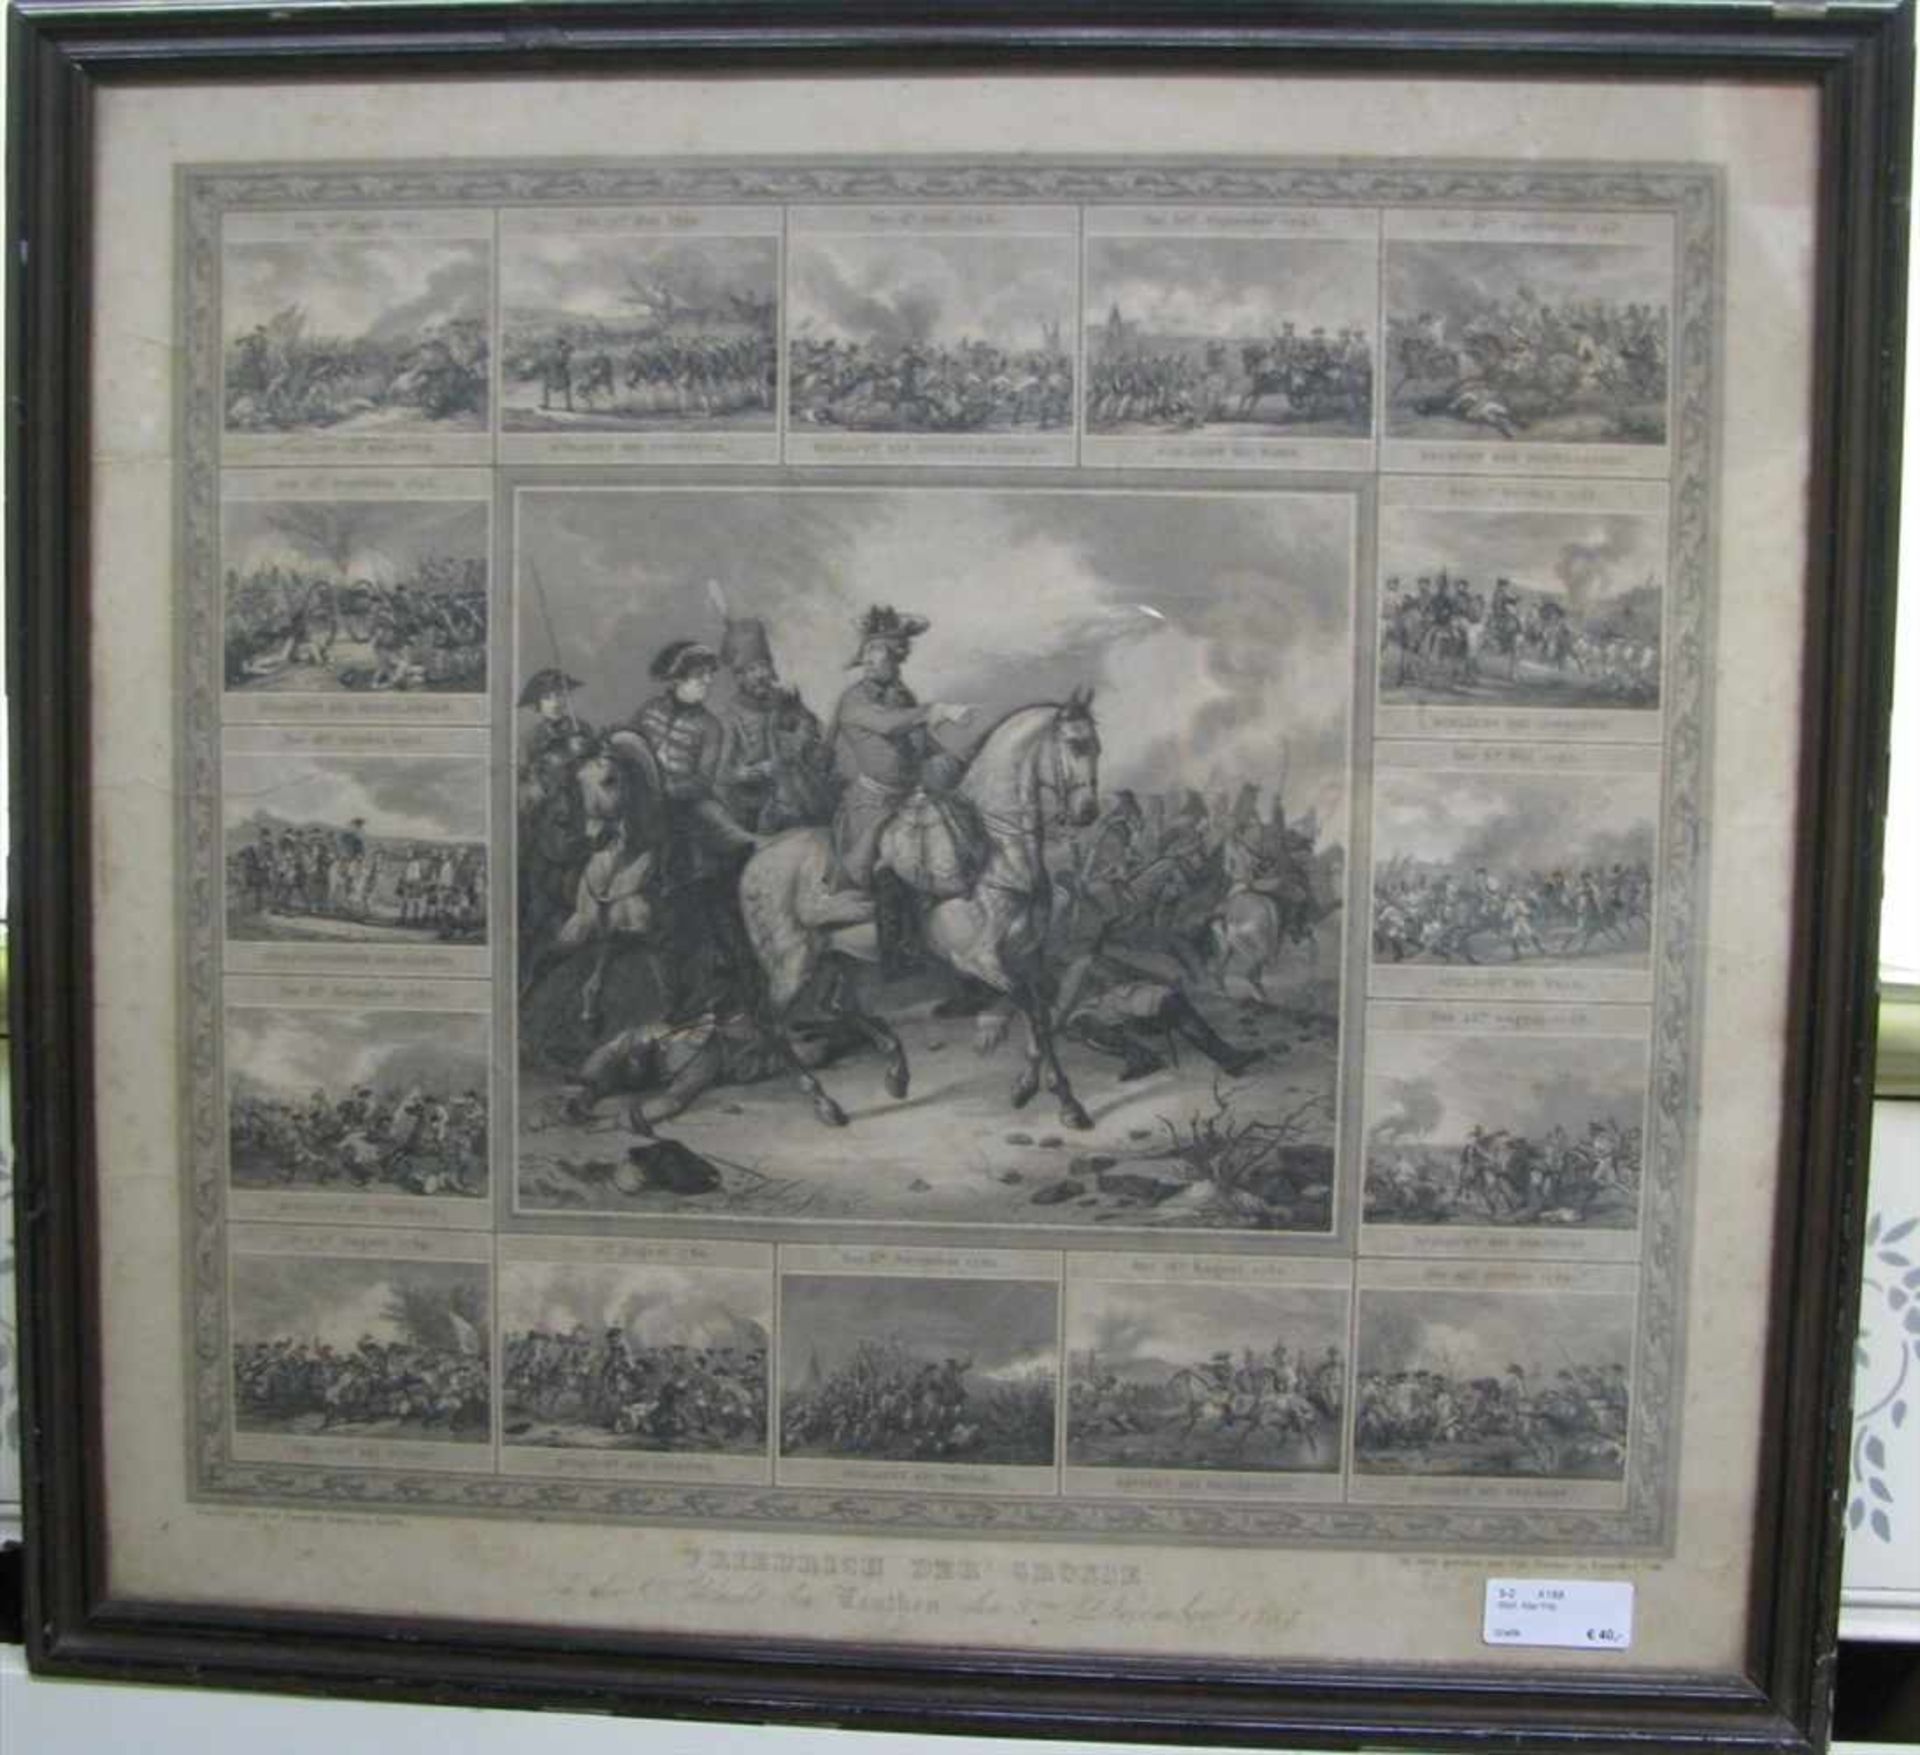 Stahlstich, Carl Deucker, Frankfurt, 19. Jahrhundert, "Friedrich der Große - Die Schlacht bei